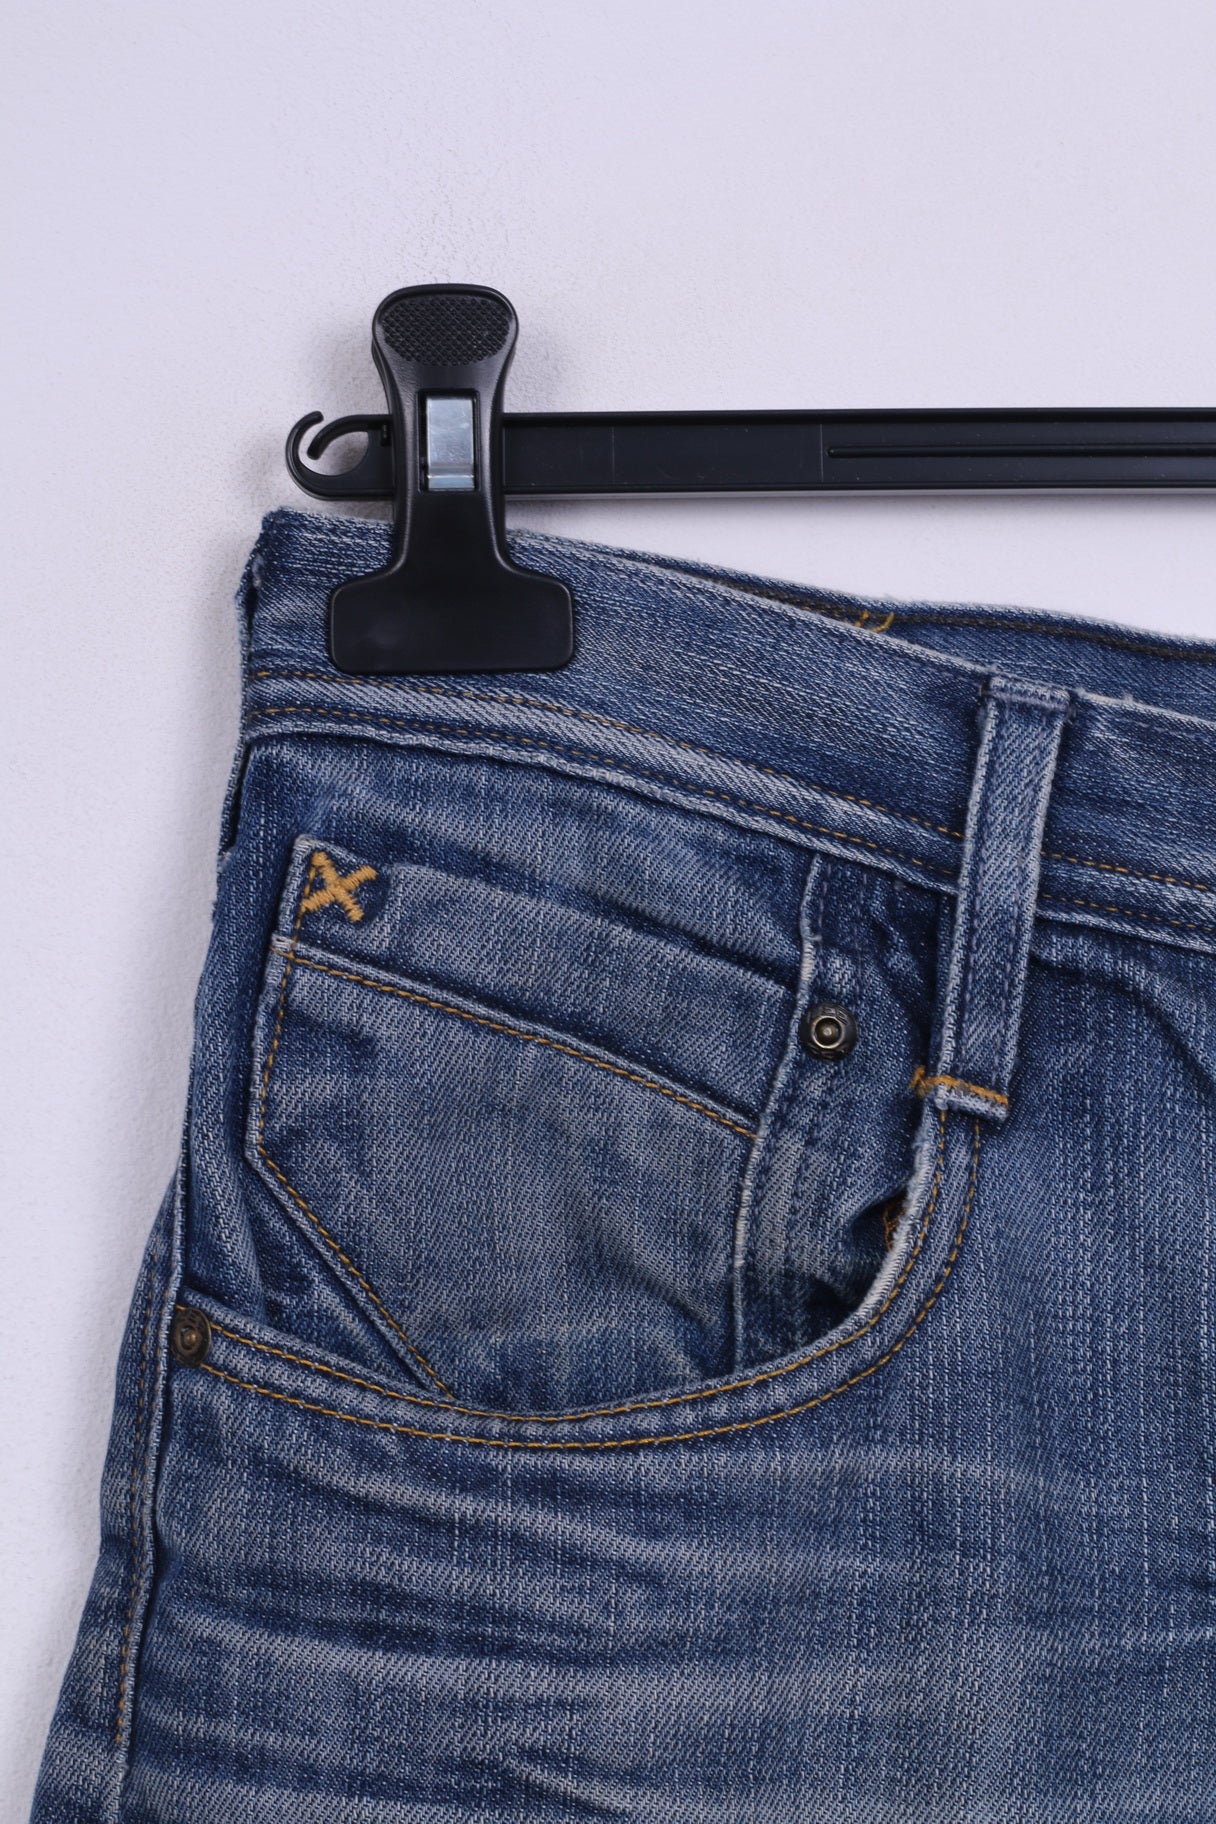 Lee Mens W 32 Trousers Blue Jeans Denim Cotton Straight Leg Pants